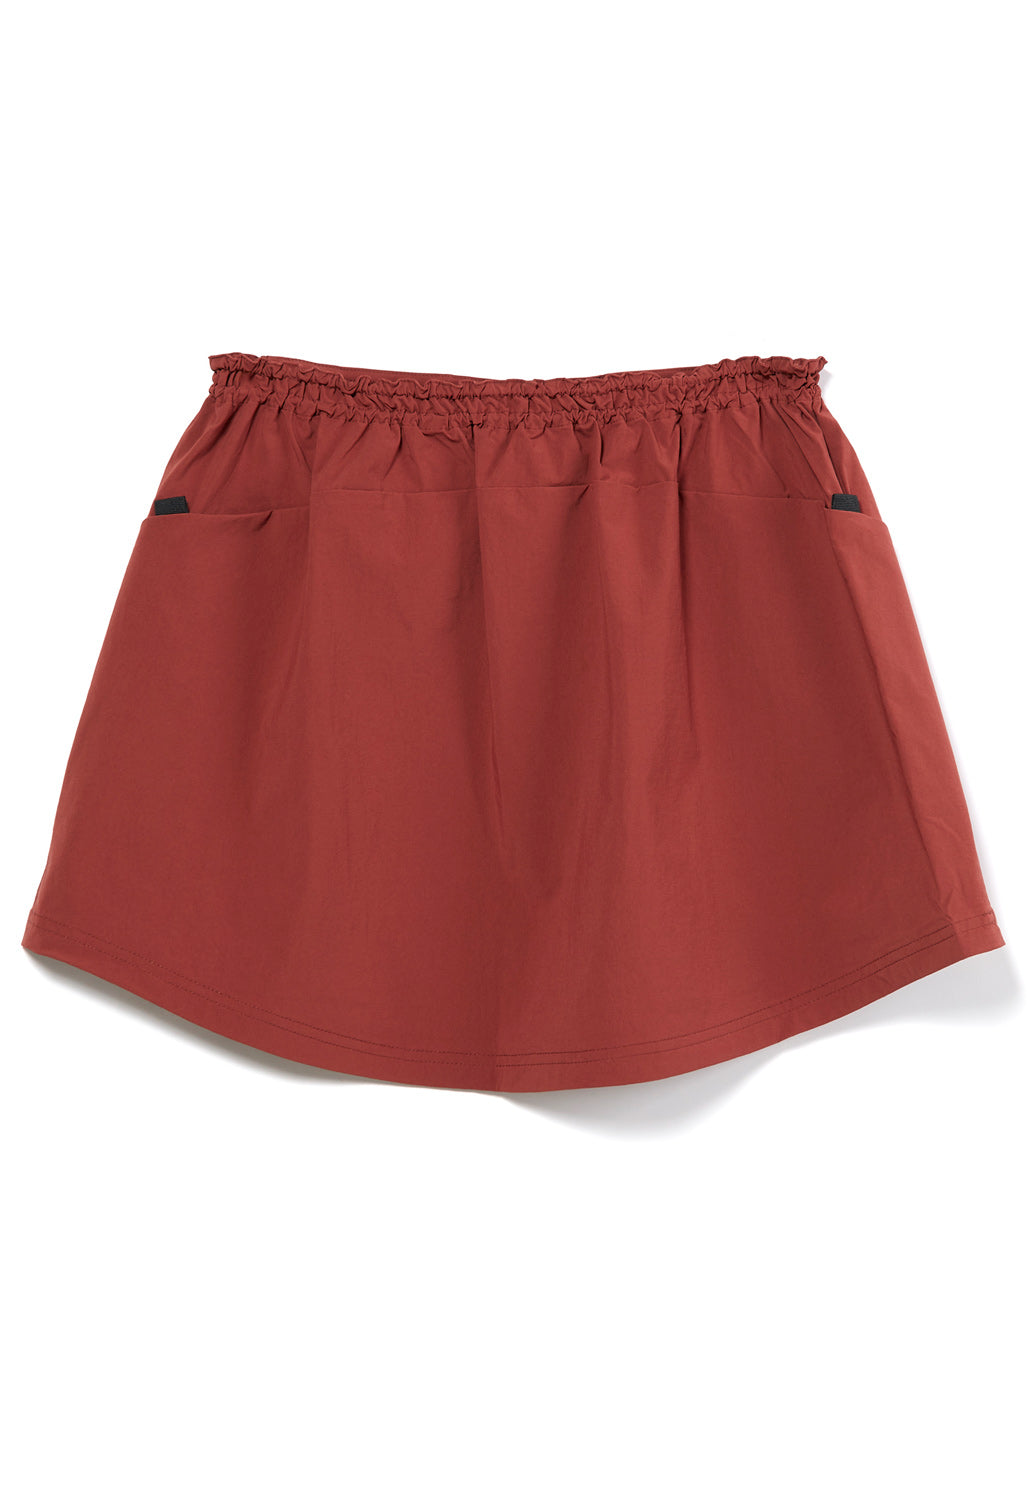 Pa'lante Packs Women's Skirt - Redwood